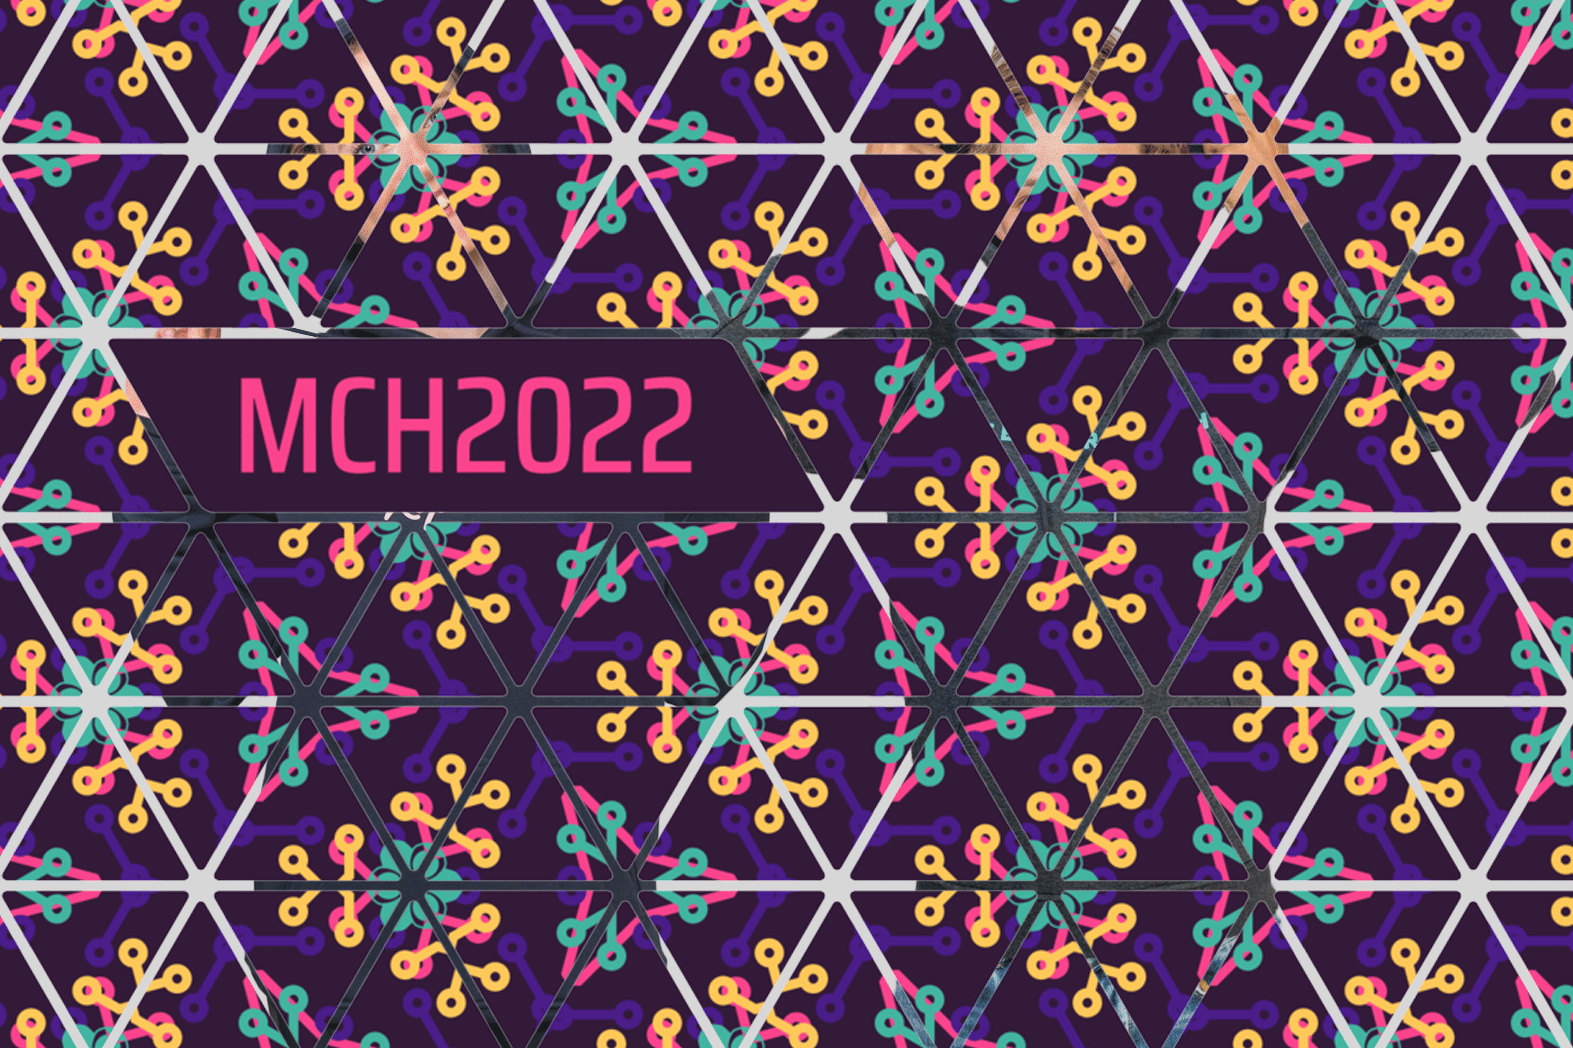 mch2022 merchandise eigenlabel